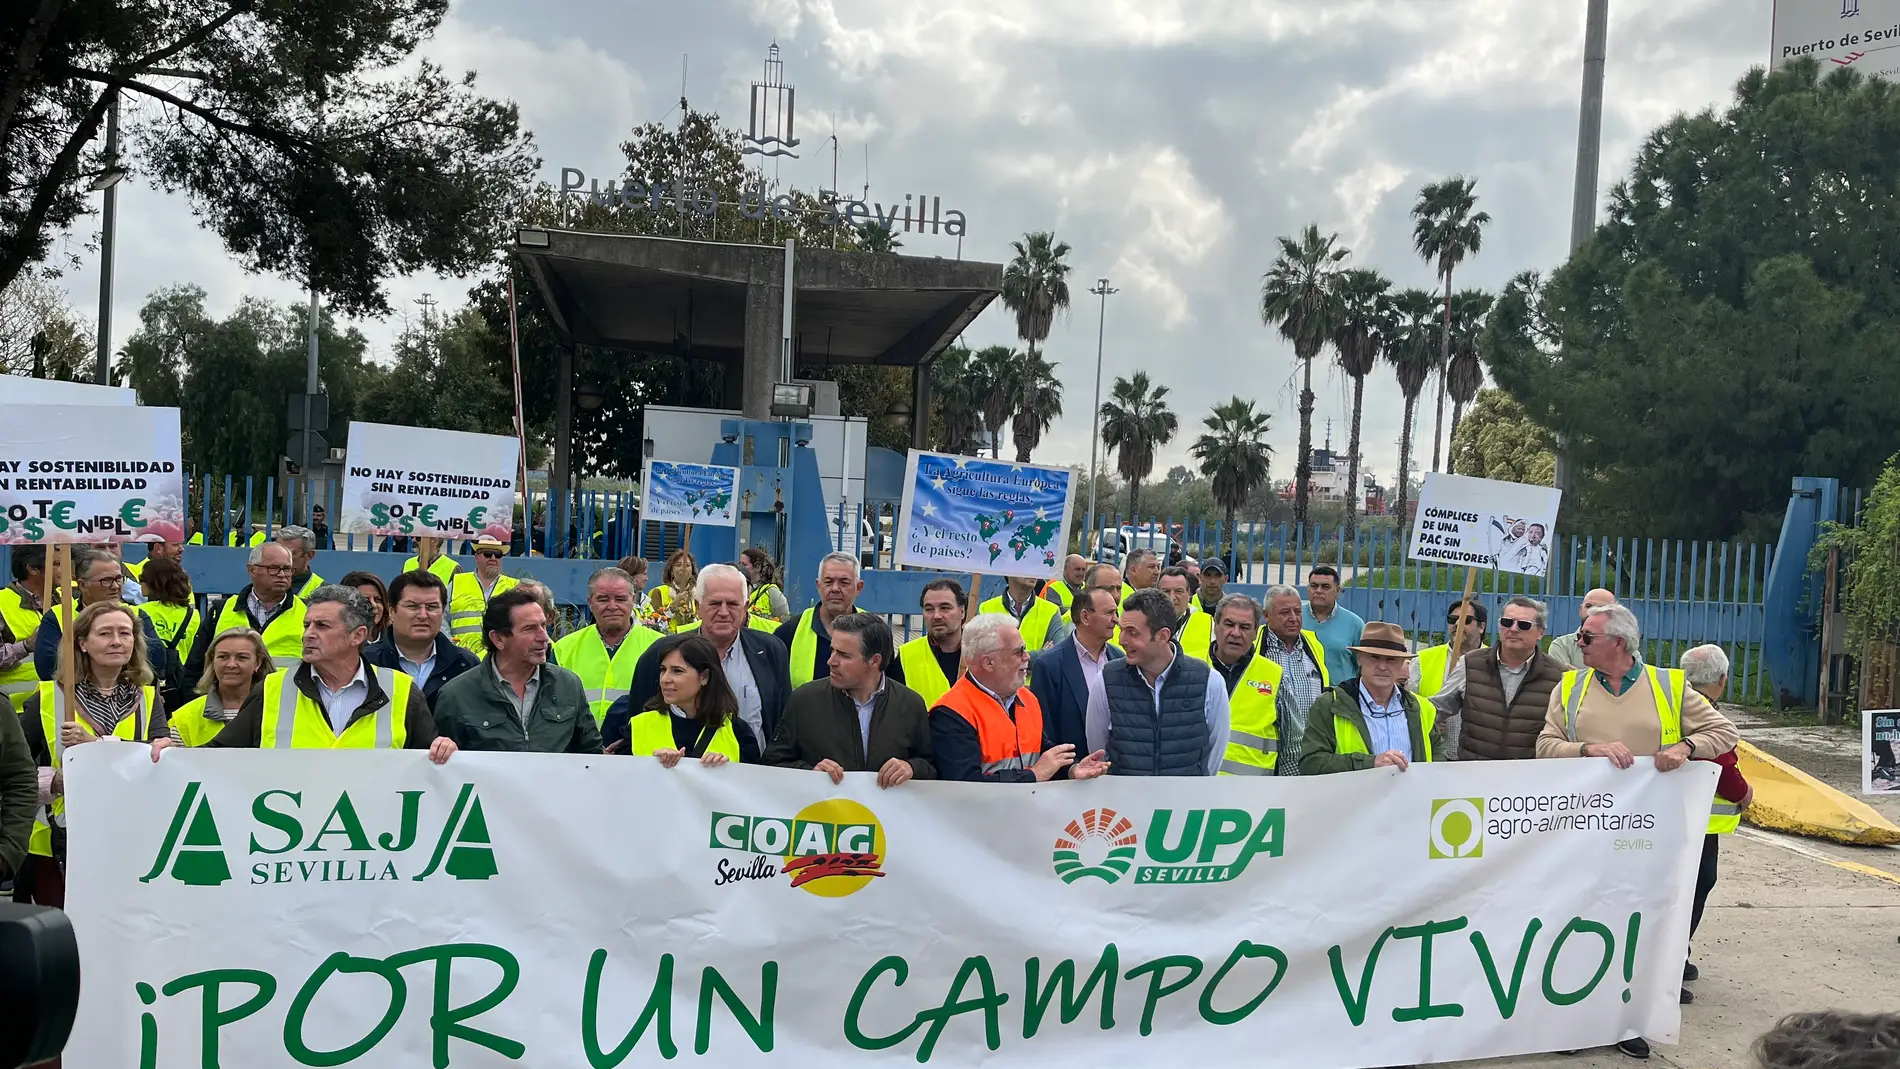 Los representantes de las principales organizaciones agrarias bloquean la entrada al Puerto de Sevilla